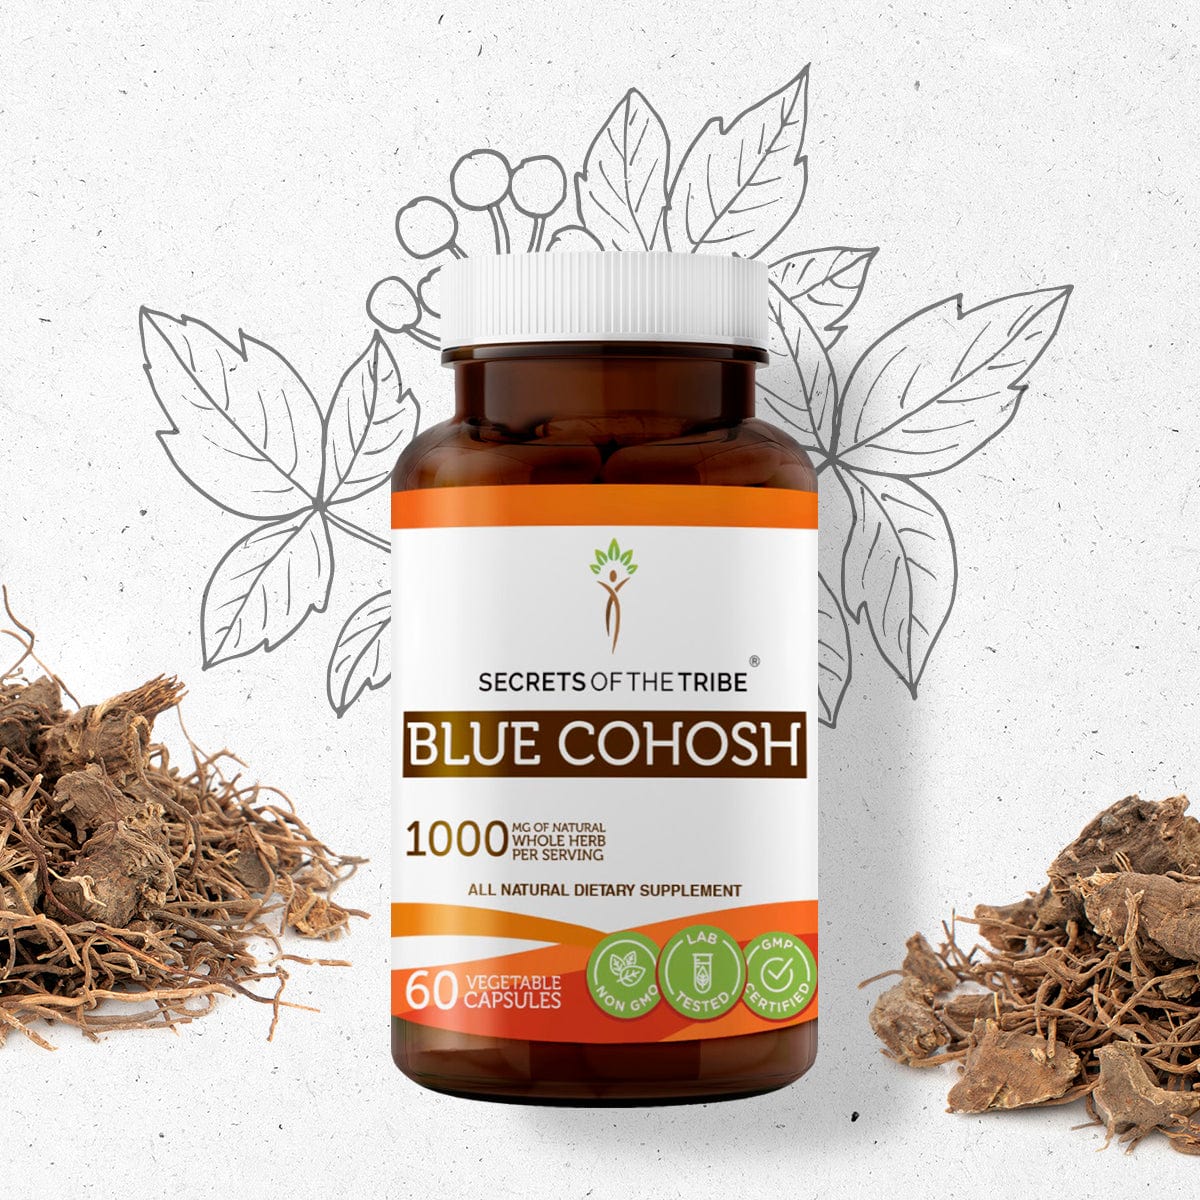 Blue Cohosh Capsules|60&120 Capsules|Certified|Organic